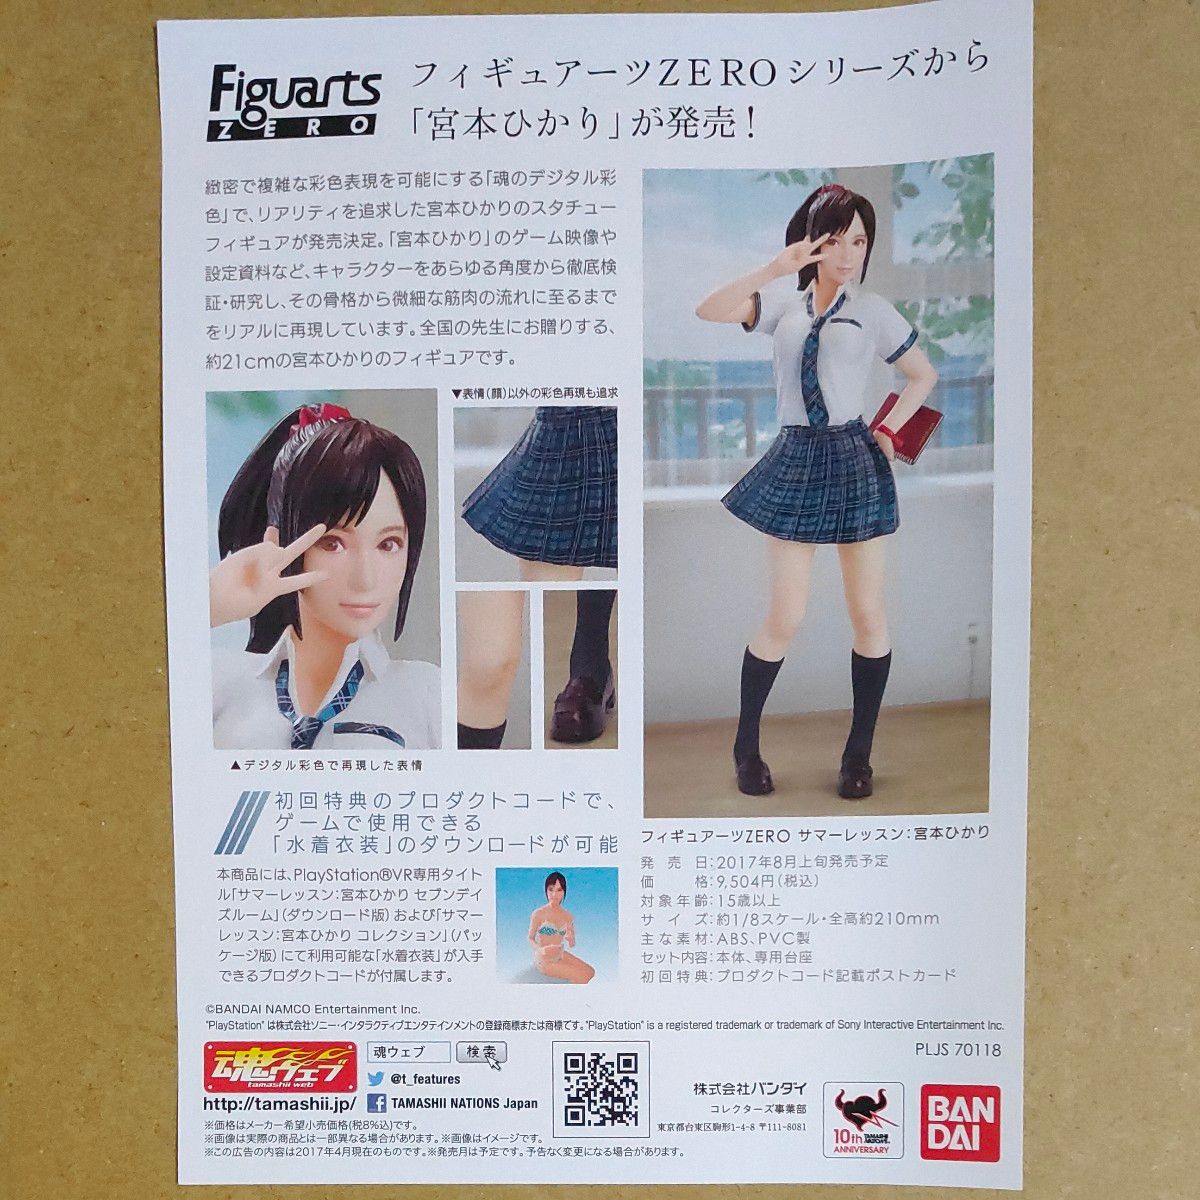 【PS4】 サマーレッスン：宮本ひかり コレクション